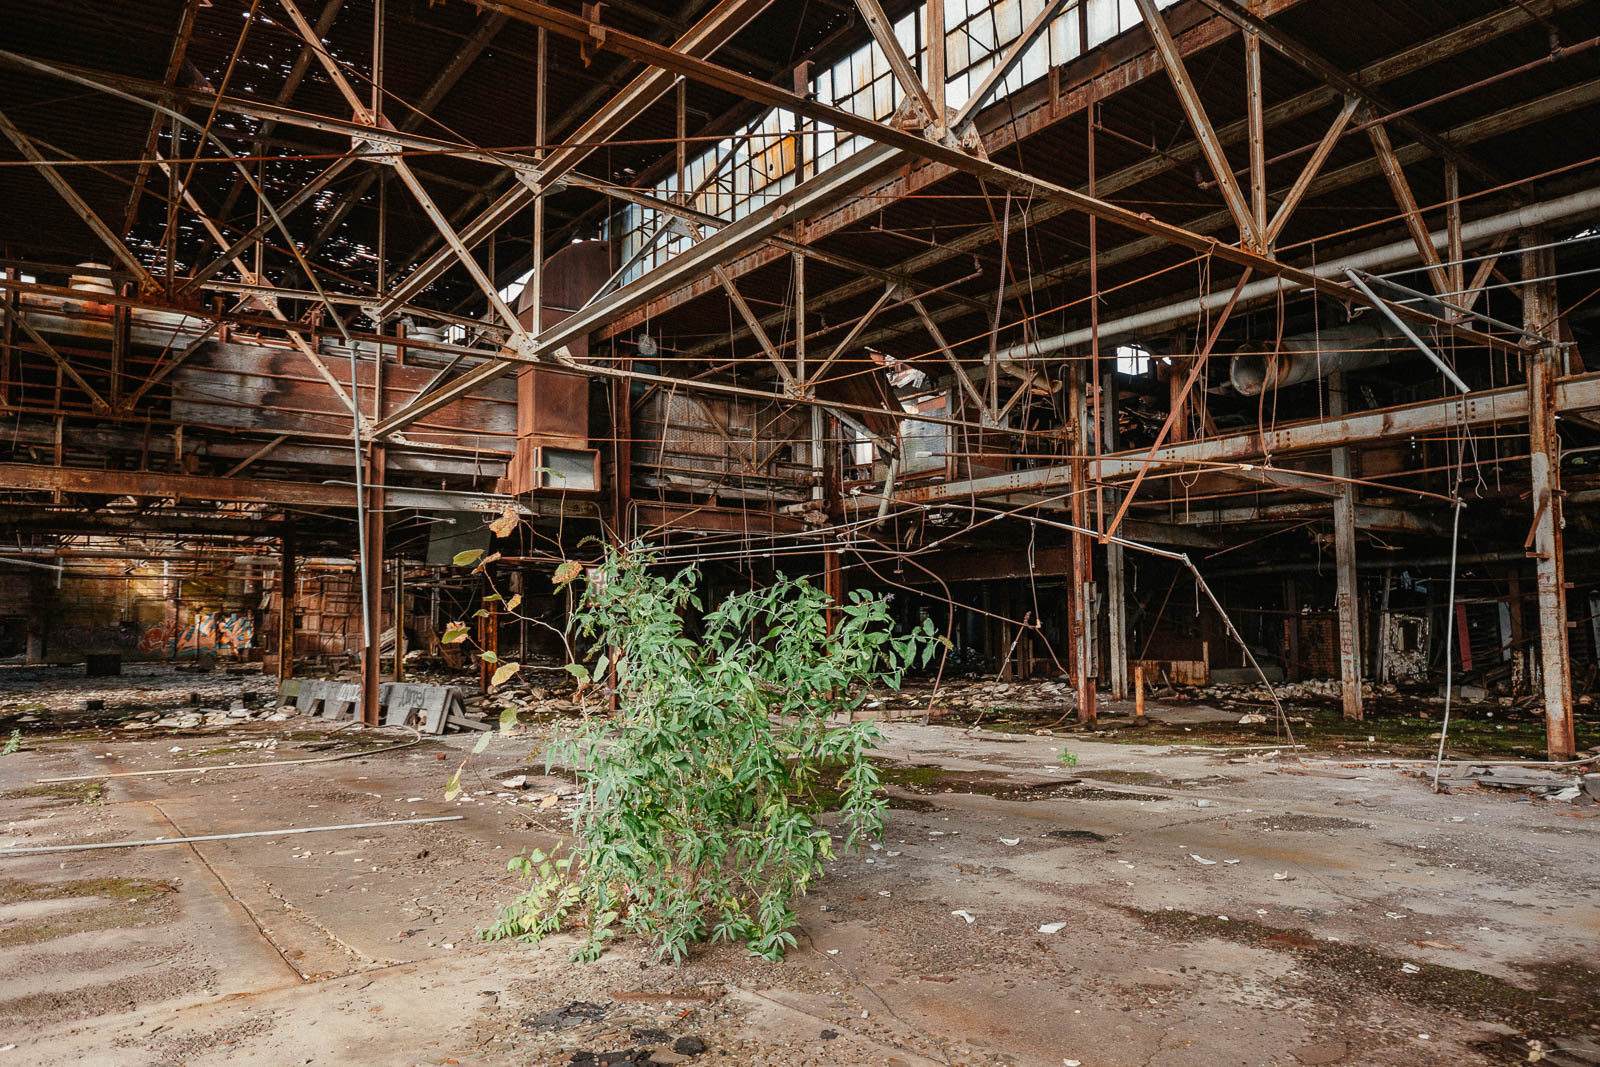 Abandoned Shenango China Factory